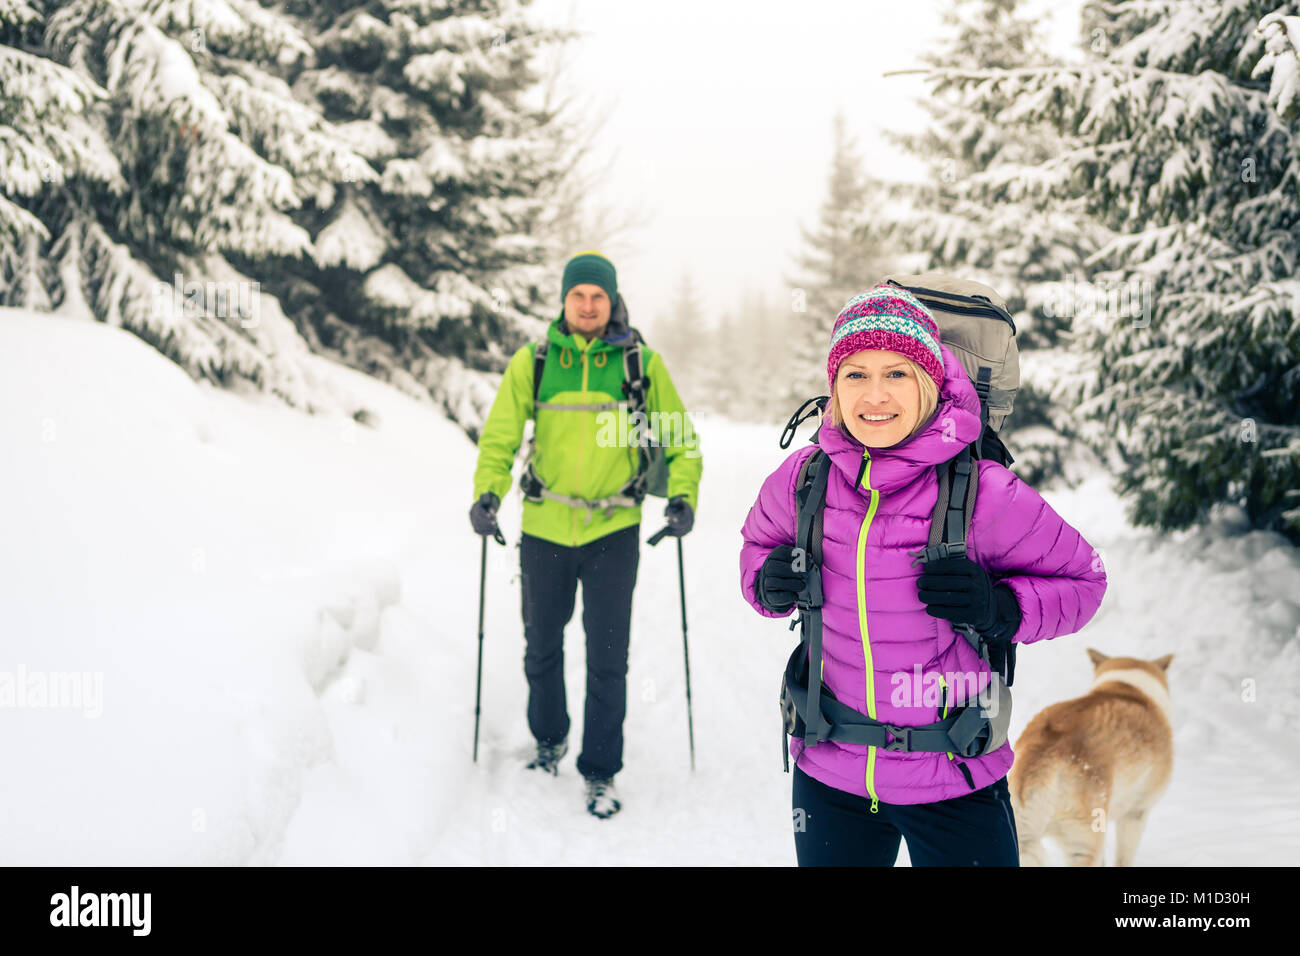 Happy Teamarbeit paar Wanderer wandern in weiß winter Wälder und Berge. Junge Menschen zu Fuß auf verschneiten Trail mit Rucksäcken, gesunden Lebensstil adven Stockfoto